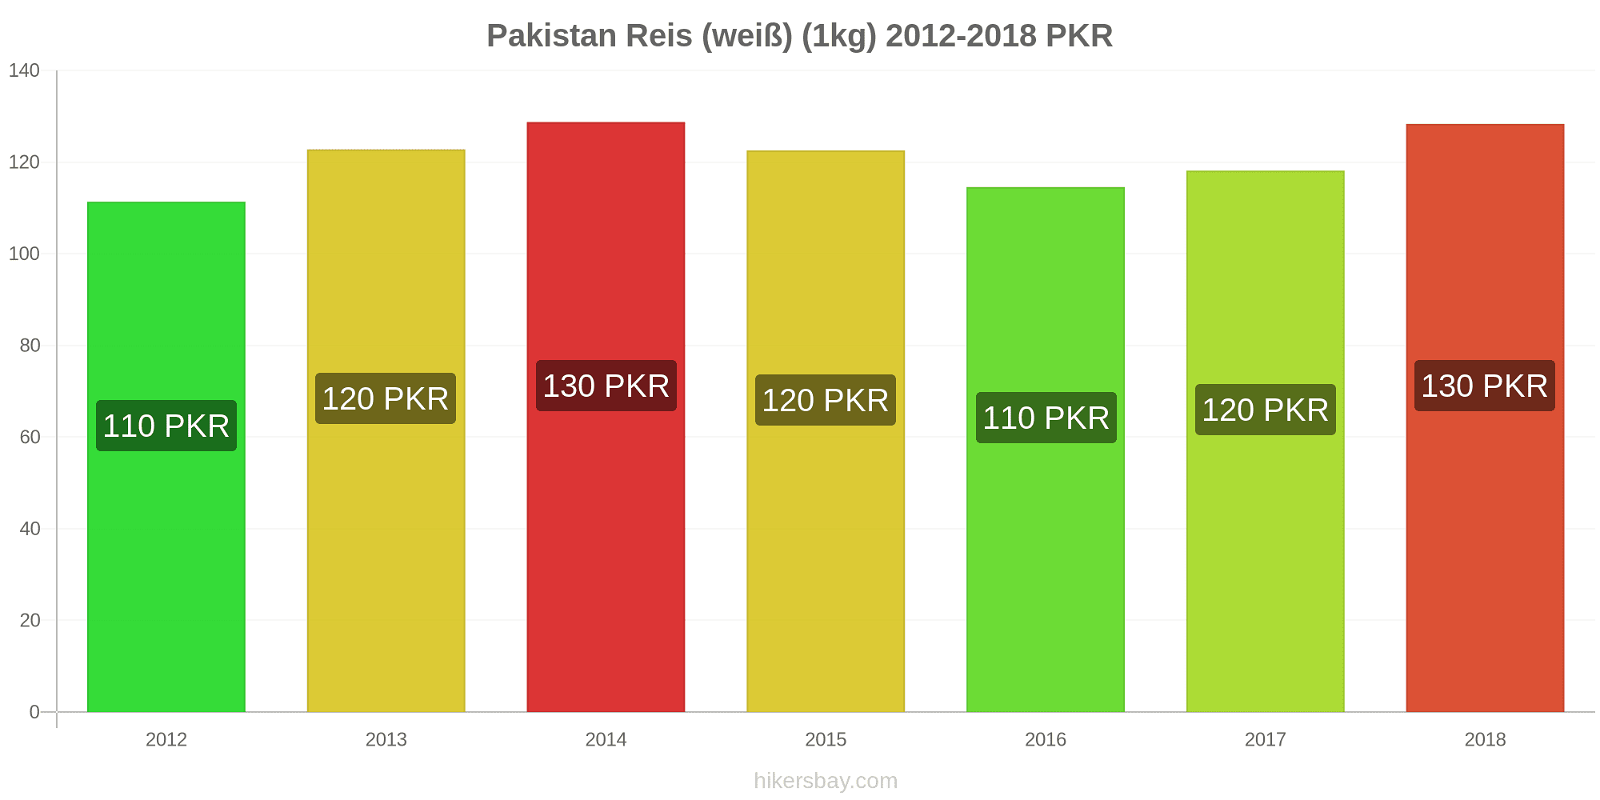 Pakistan Preisänderungen Reis (weiß) (1kg) hikersbay.com